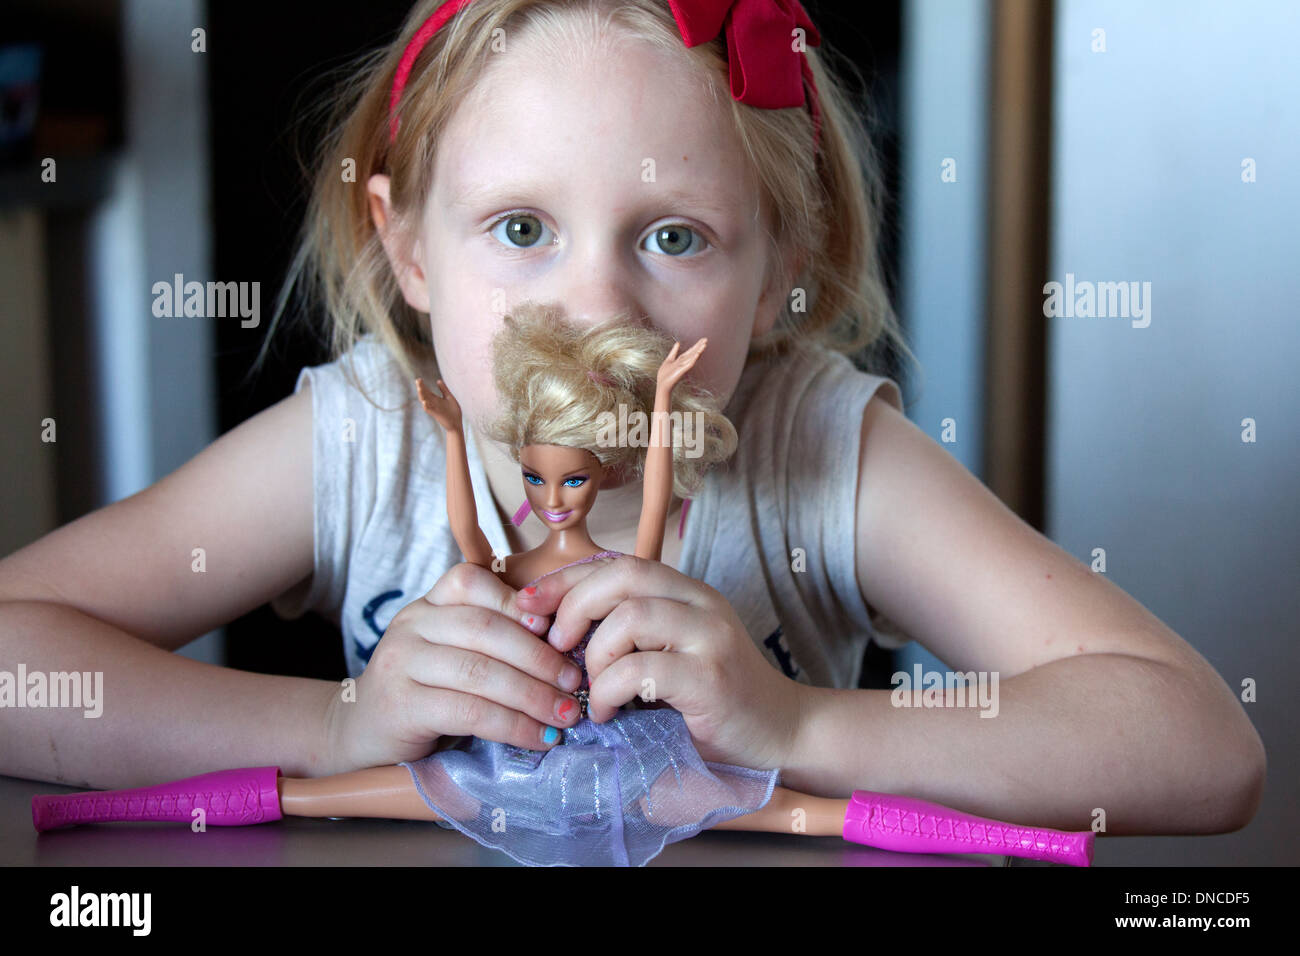 Mädchen Alter 6 spielen mit Barbie Doll den Spagat zu tun. Lodz Polen Stockfoto